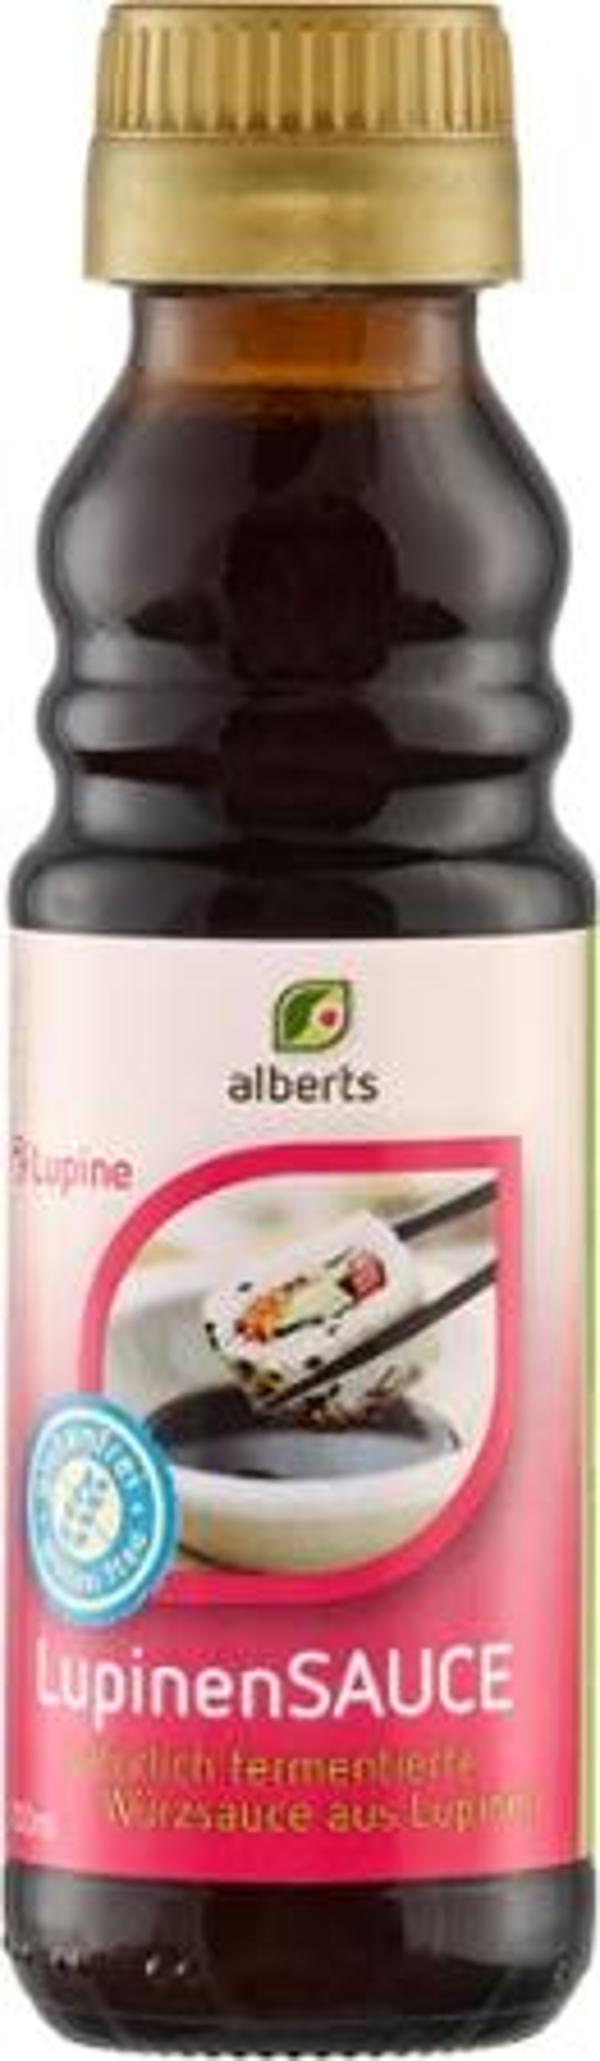 Produktfoto zu Lupinen Sauce von Alberts